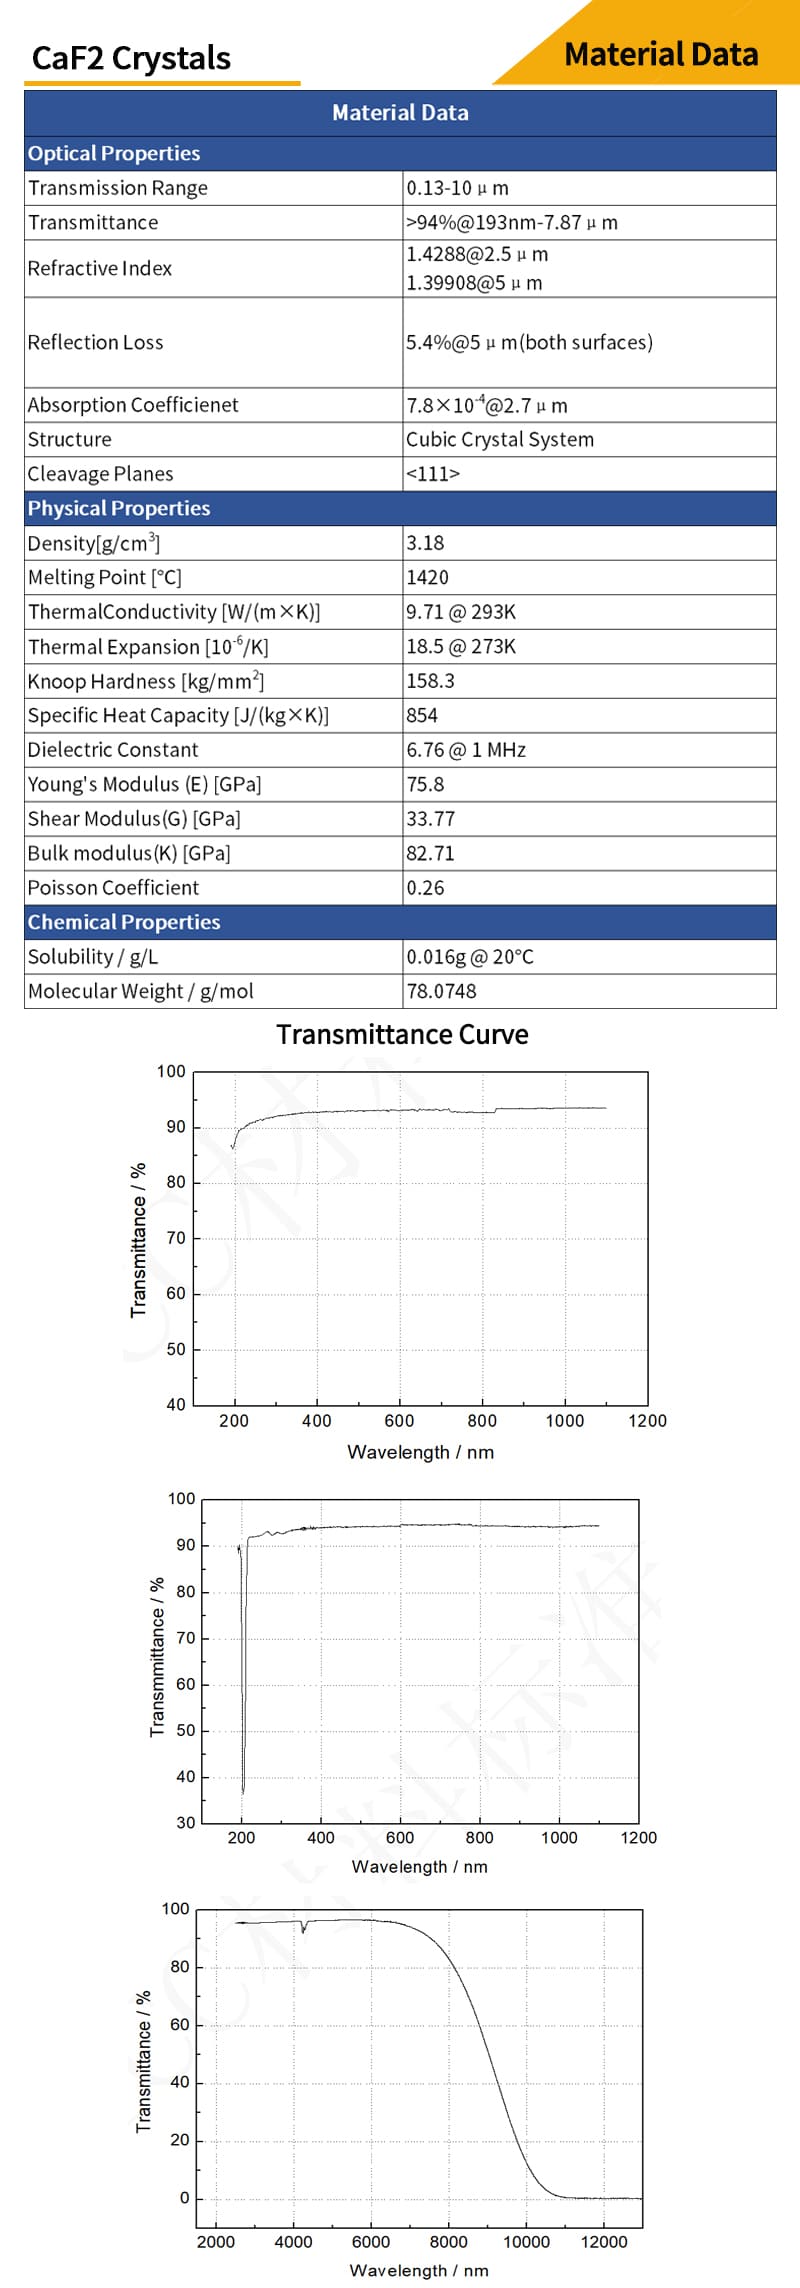 Calcium Fluoride meniscus lenses material data and transmittance curves